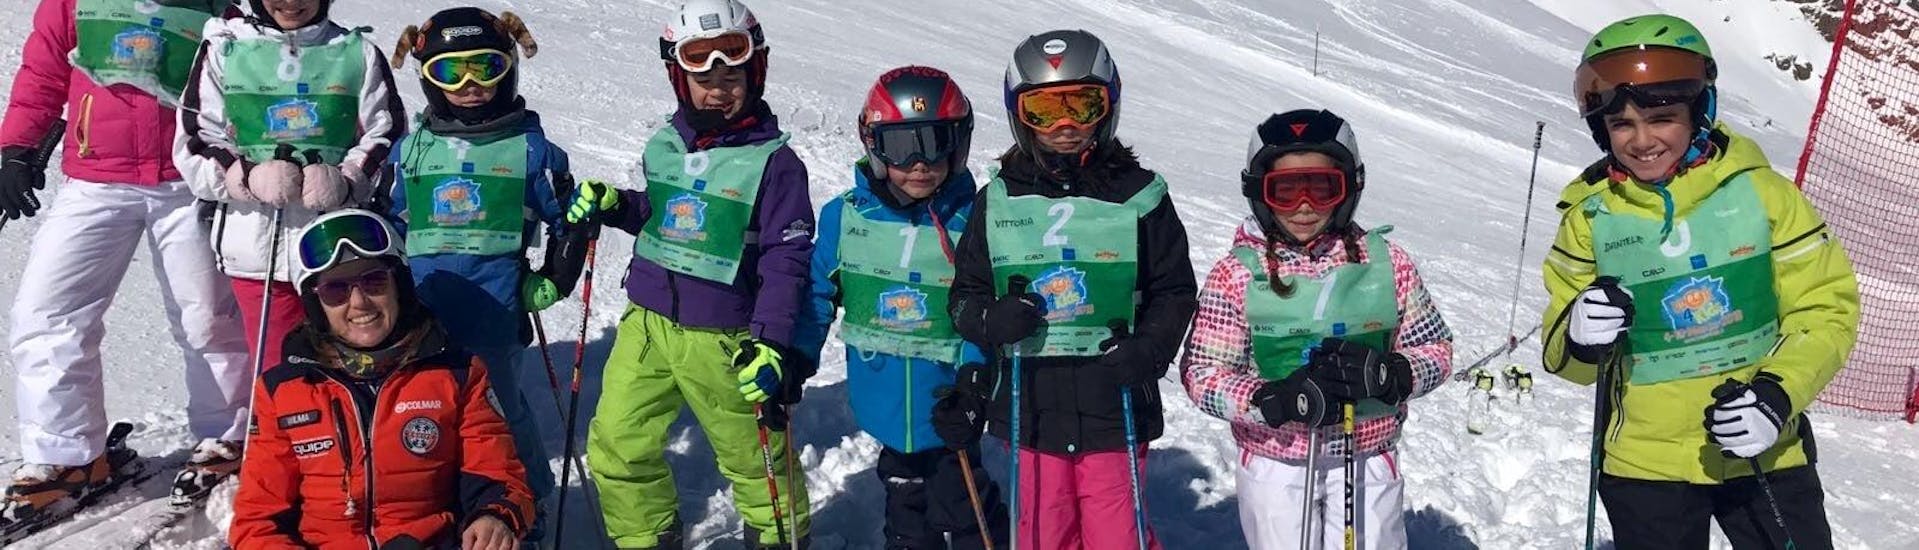  Bambini insieme sulle piste di Falcade durante una delle lezioni di sci per bambini (4-12 anni) - Giornata intera. Grandi immagini a Falcade durante una delle lezioni di sci per bambini (4-12 anni) - Giornata intera.